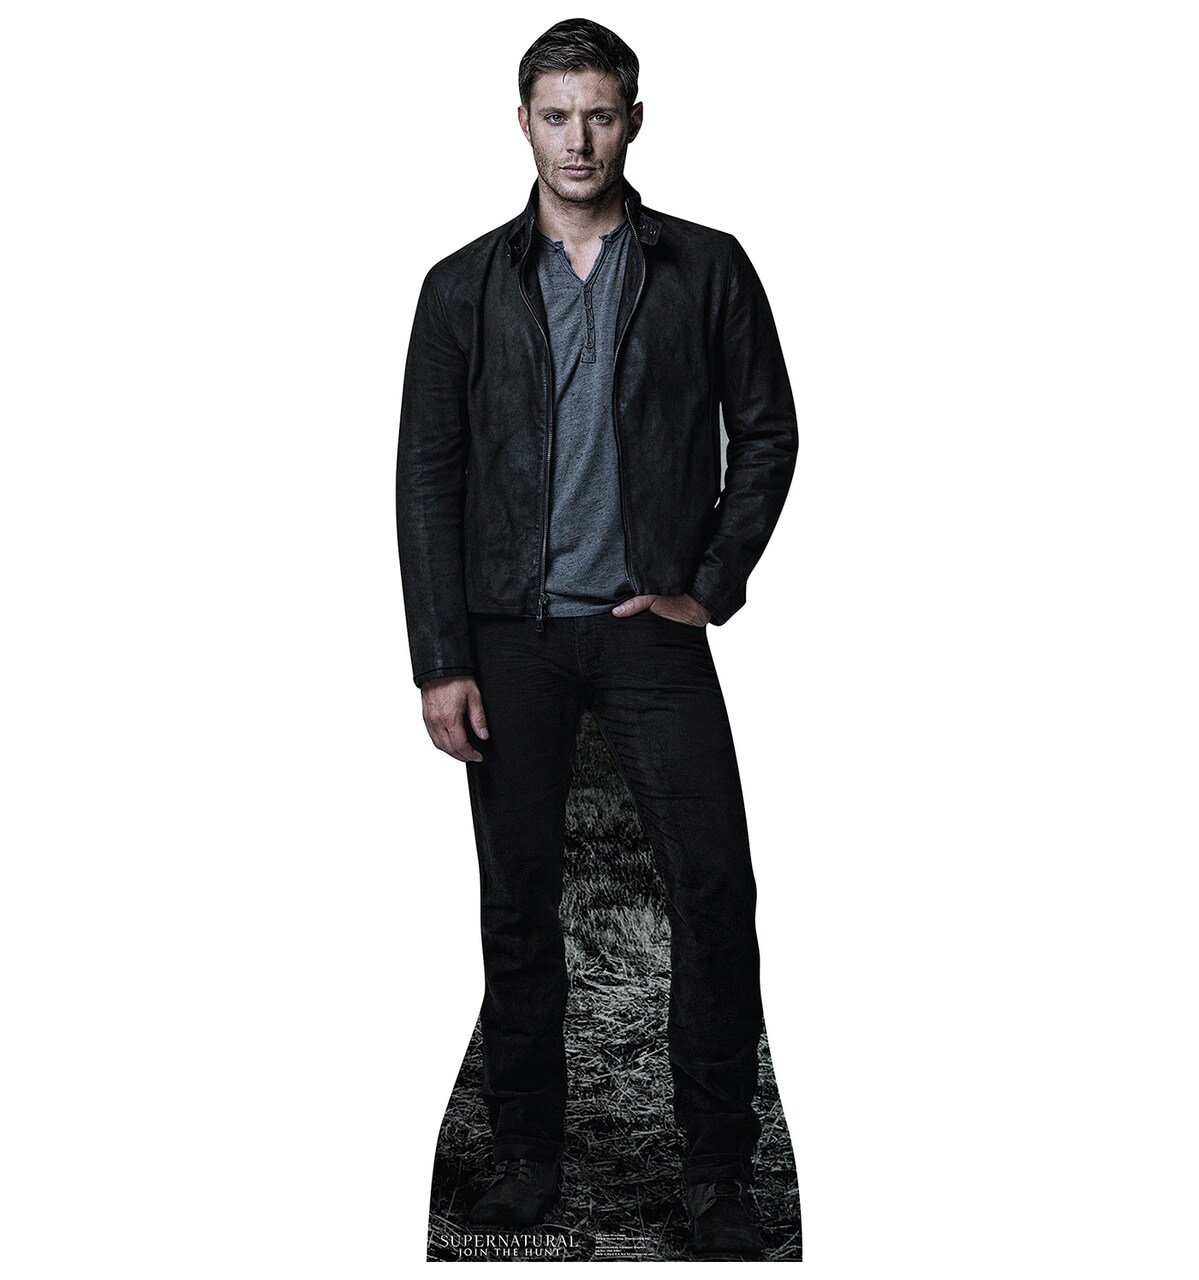 Dean Winchester (Supernatural)